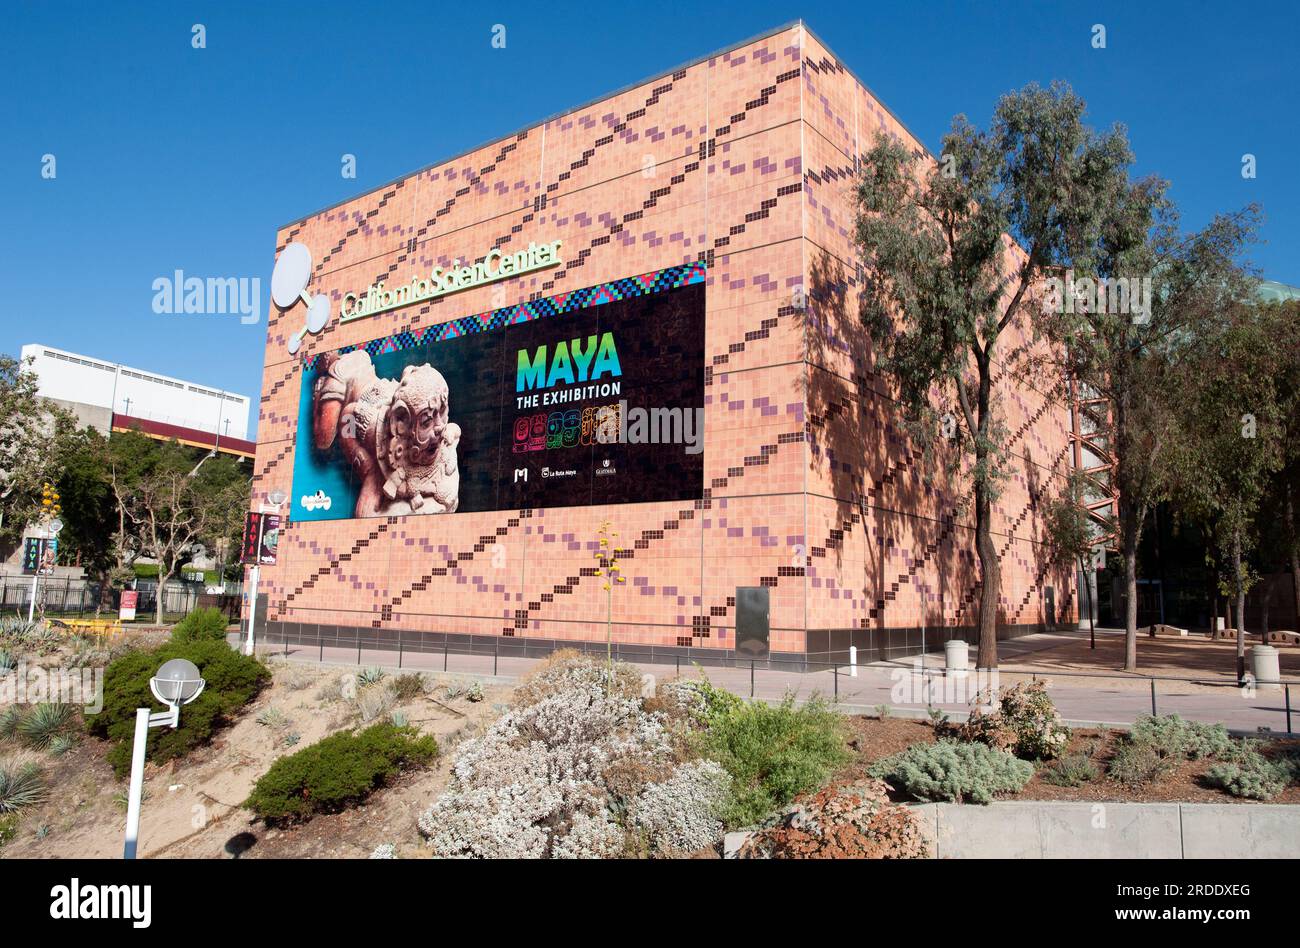 Extérieur du California Science Center avec une affiche faisant la promotion de Maya the Exhibition au Parc d'exposition, Los Angeles, Californie. Banque D'Images